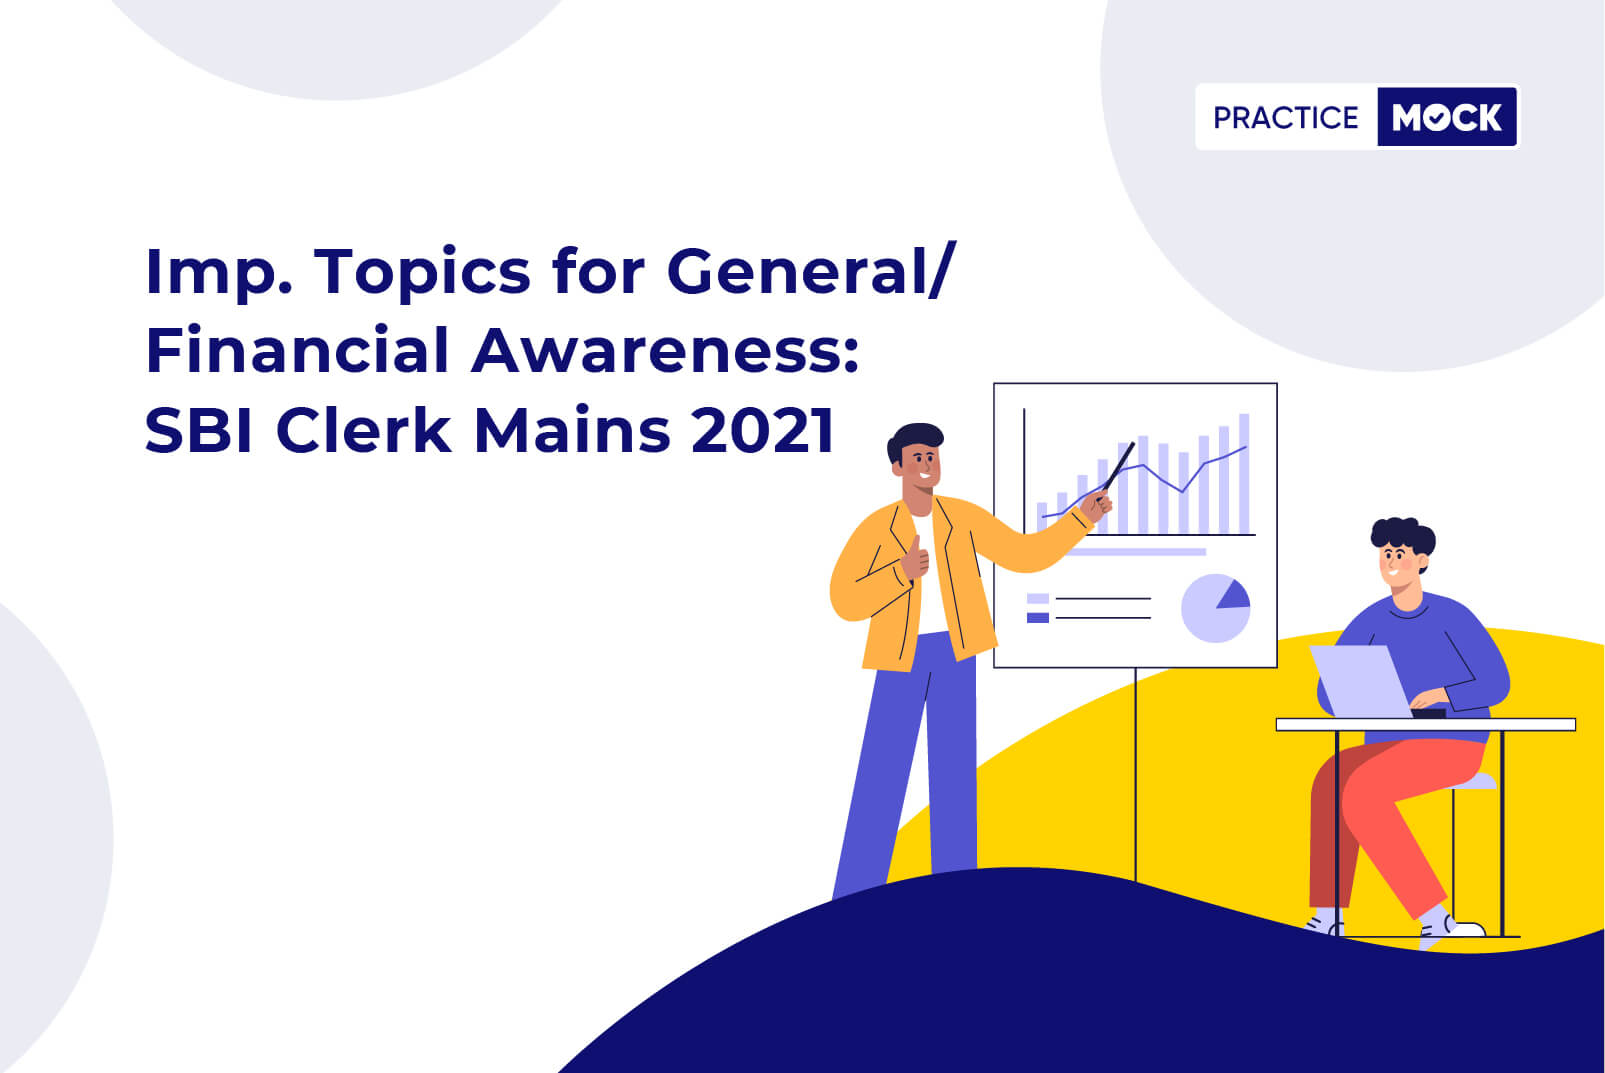 Imp. Topics for General/Financial Awareness-SBI Clerk Mains 2021